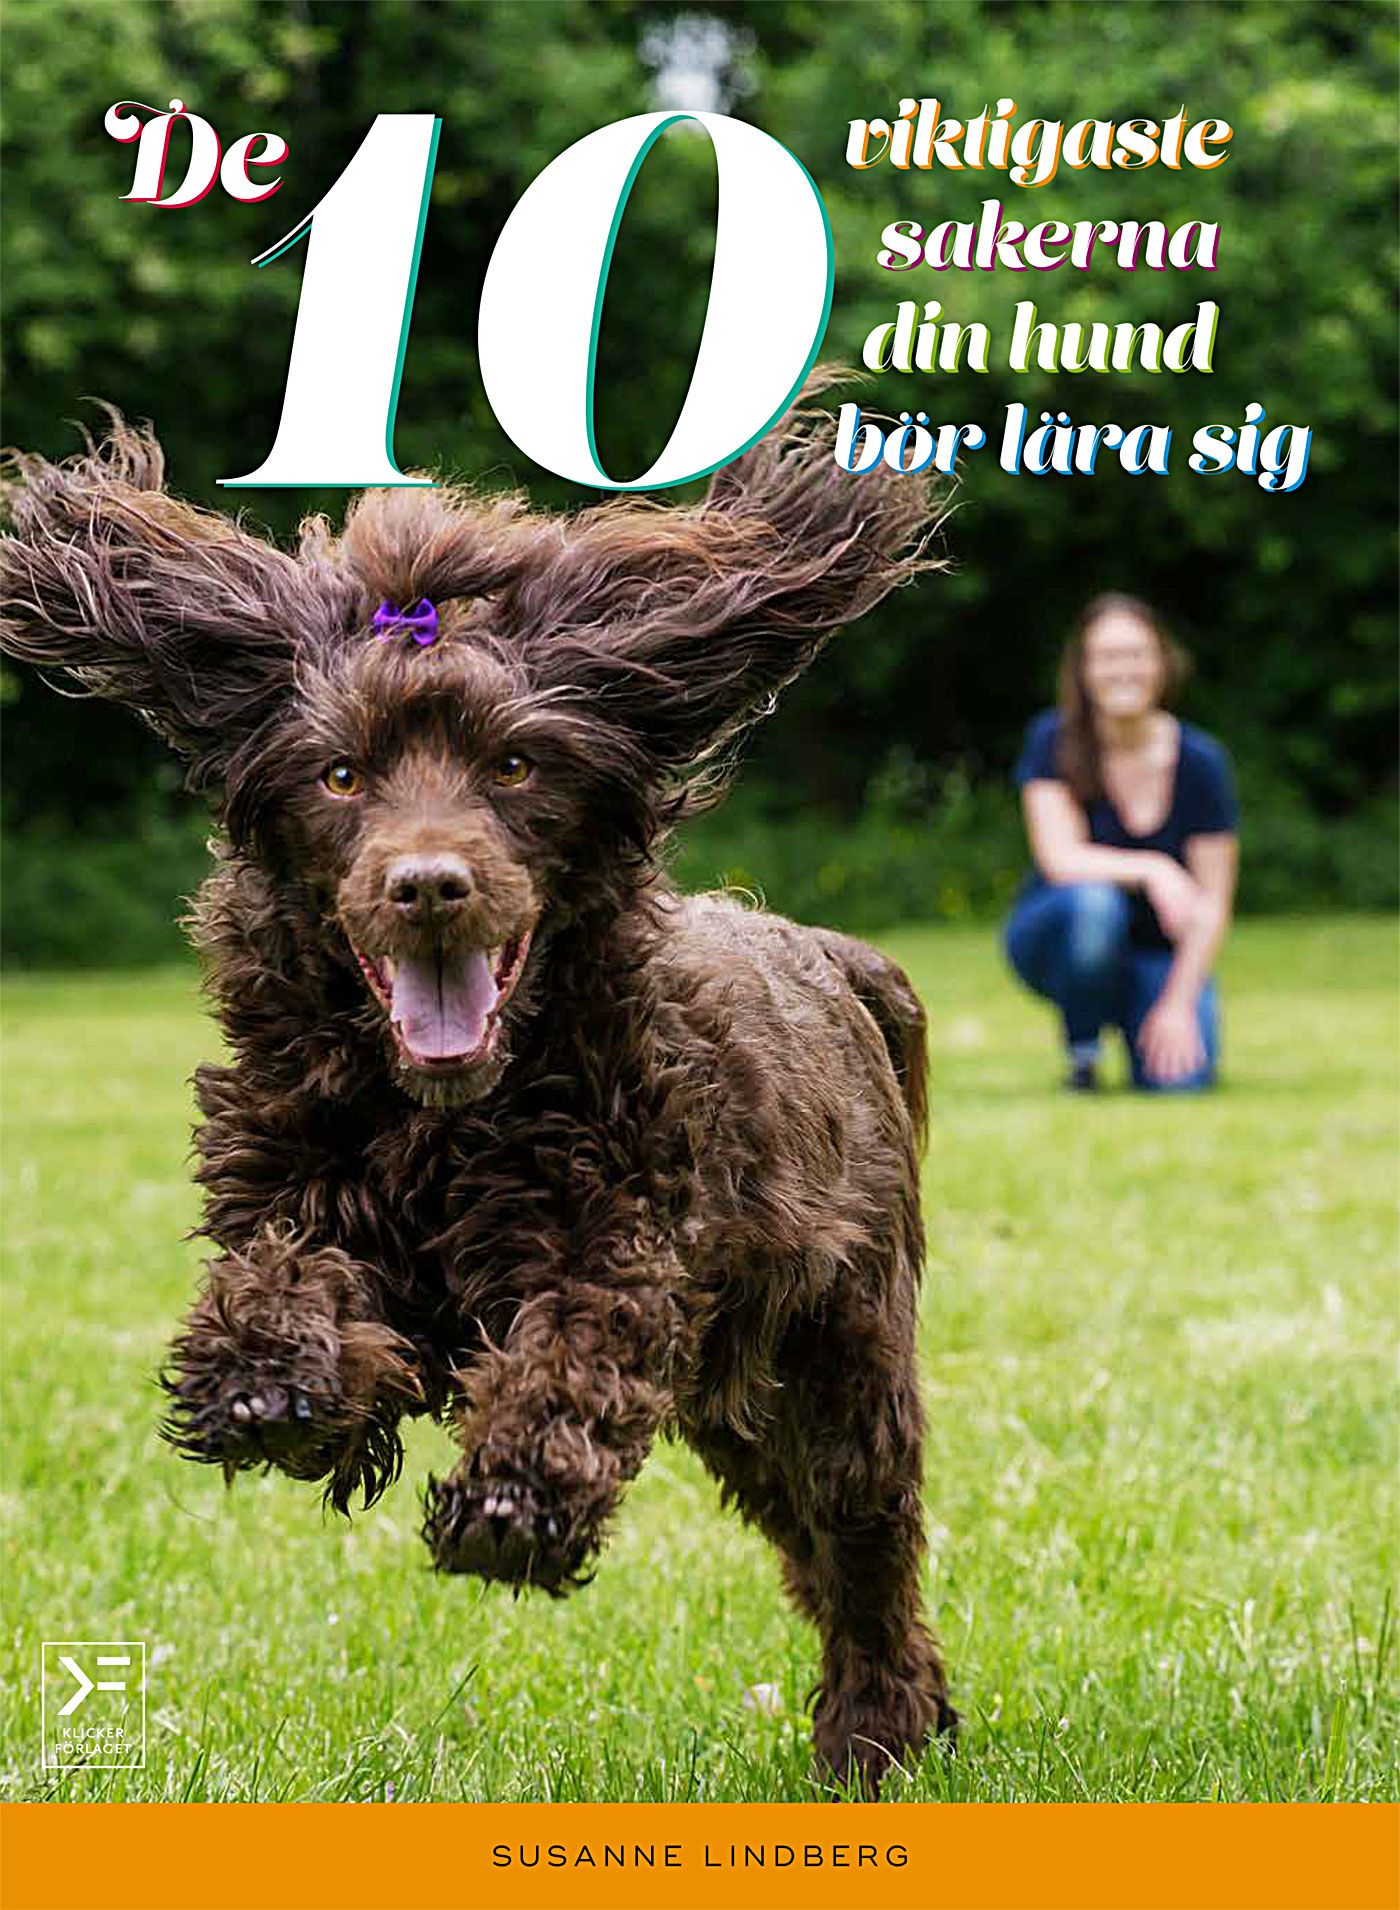 De 10 viktigaste sakerna din hund bör lära sig, e-bok av Susanne Lindberg